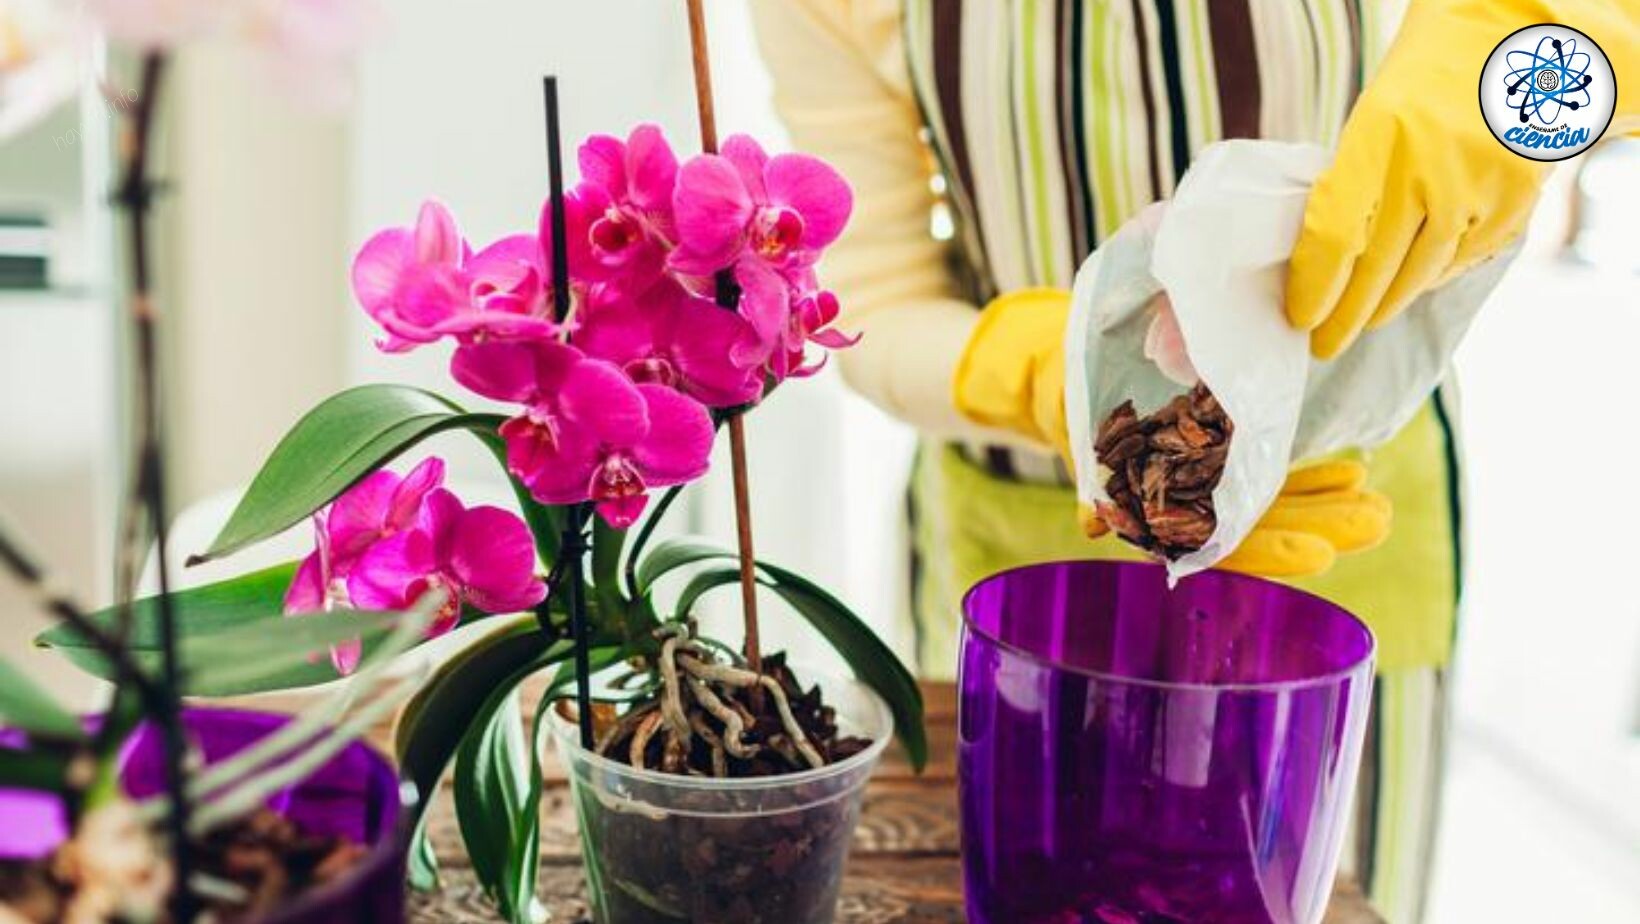 Így kell ezt a konyhai ÖSSZETEVŐT használnia saját orchidea műtrágya elkészítéséhez